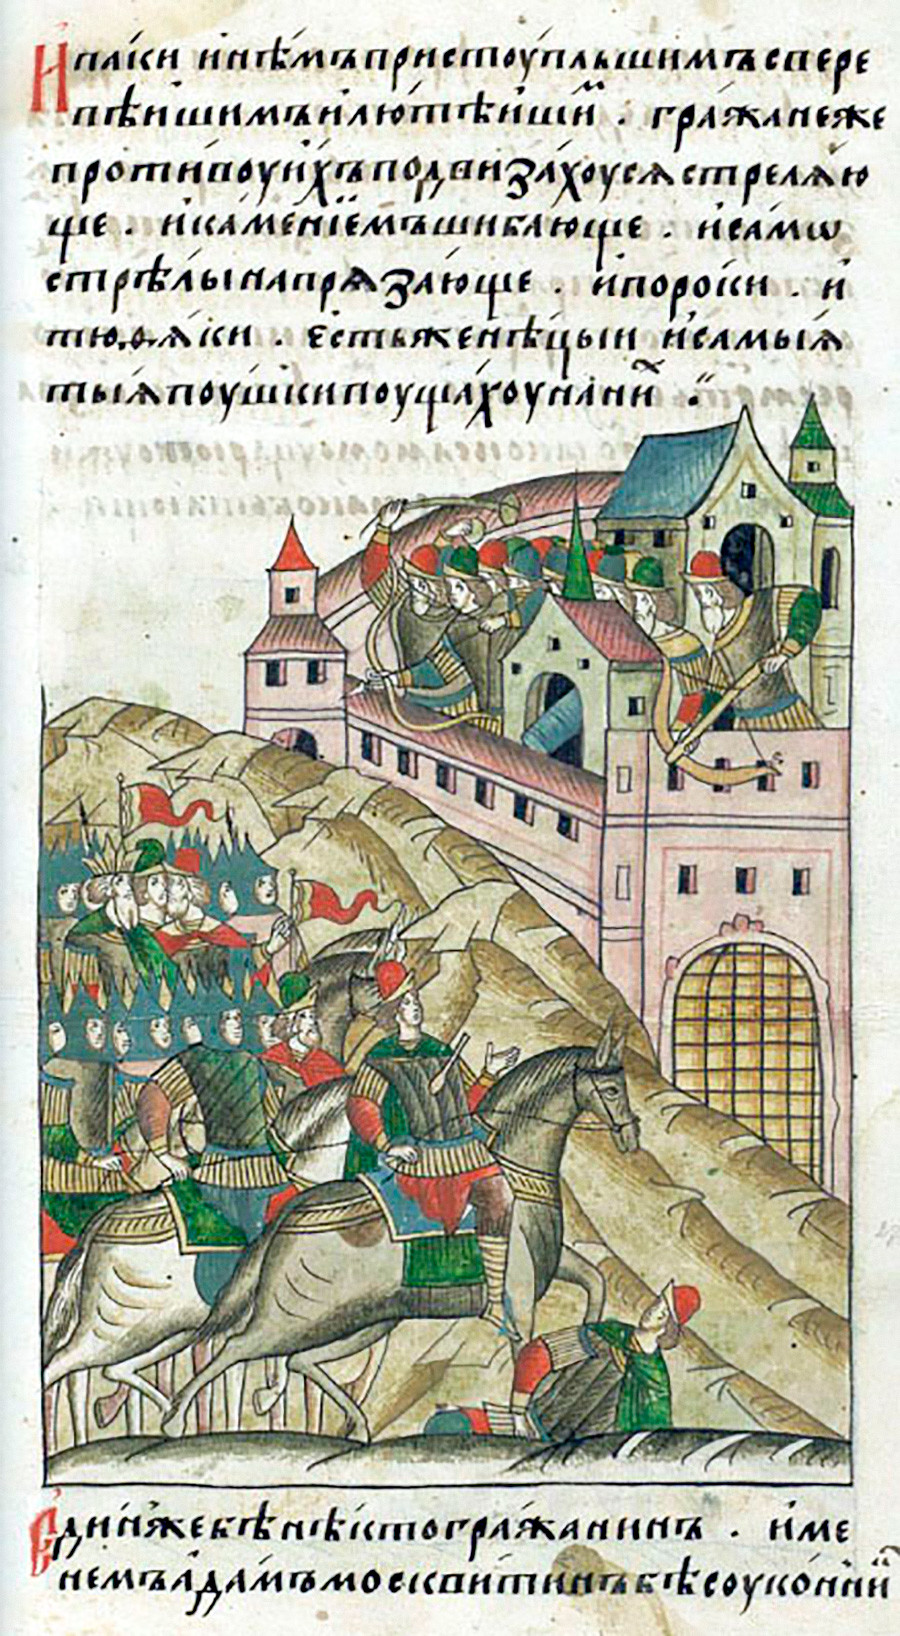 O cerco de Cã Toquetamis a Moscou, 1382 em ilustração de crônica do século 16. Nela, pode-se ver uma arma da fortaleza na torre central da muralha da cidade.